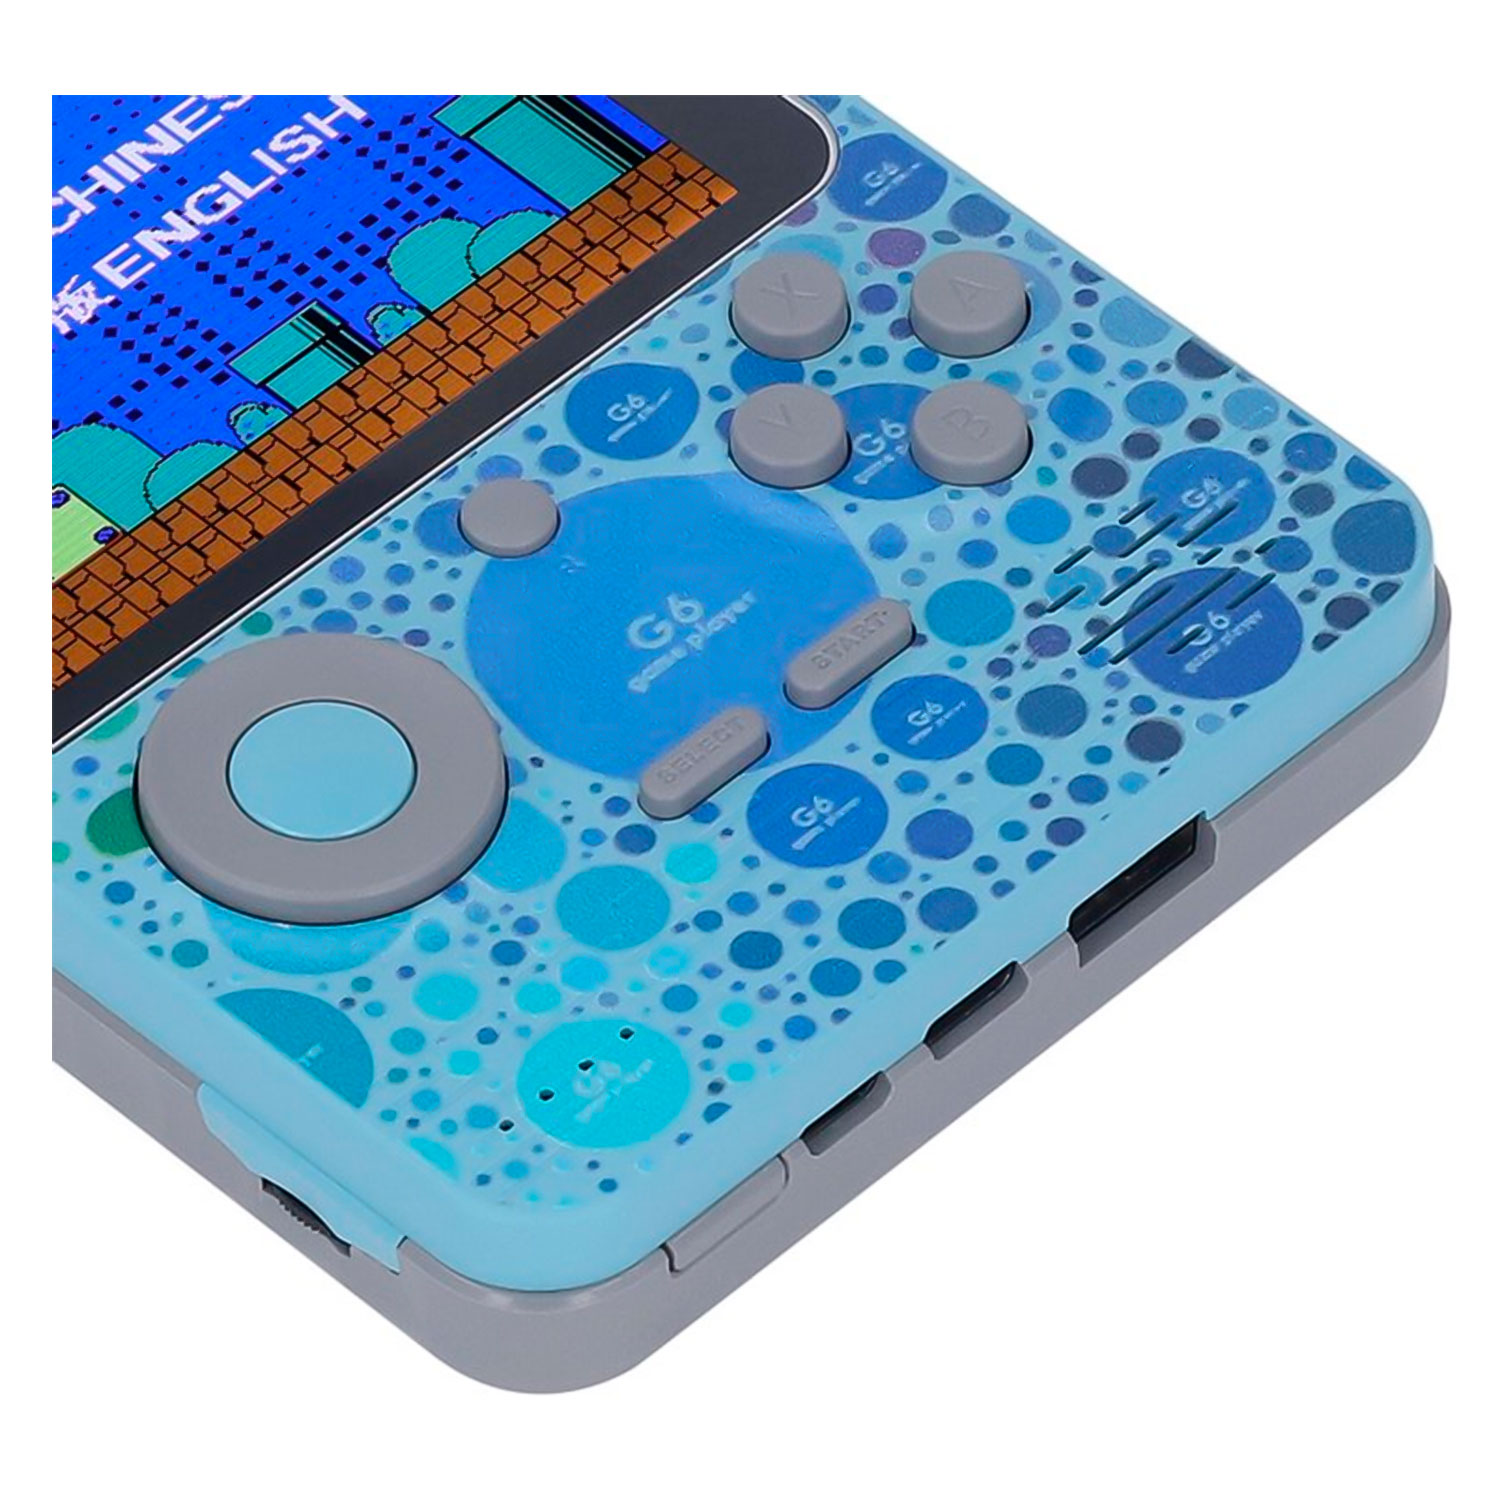 Console Portátil Game Box G6 Power Bank 666 Jogos - Azul